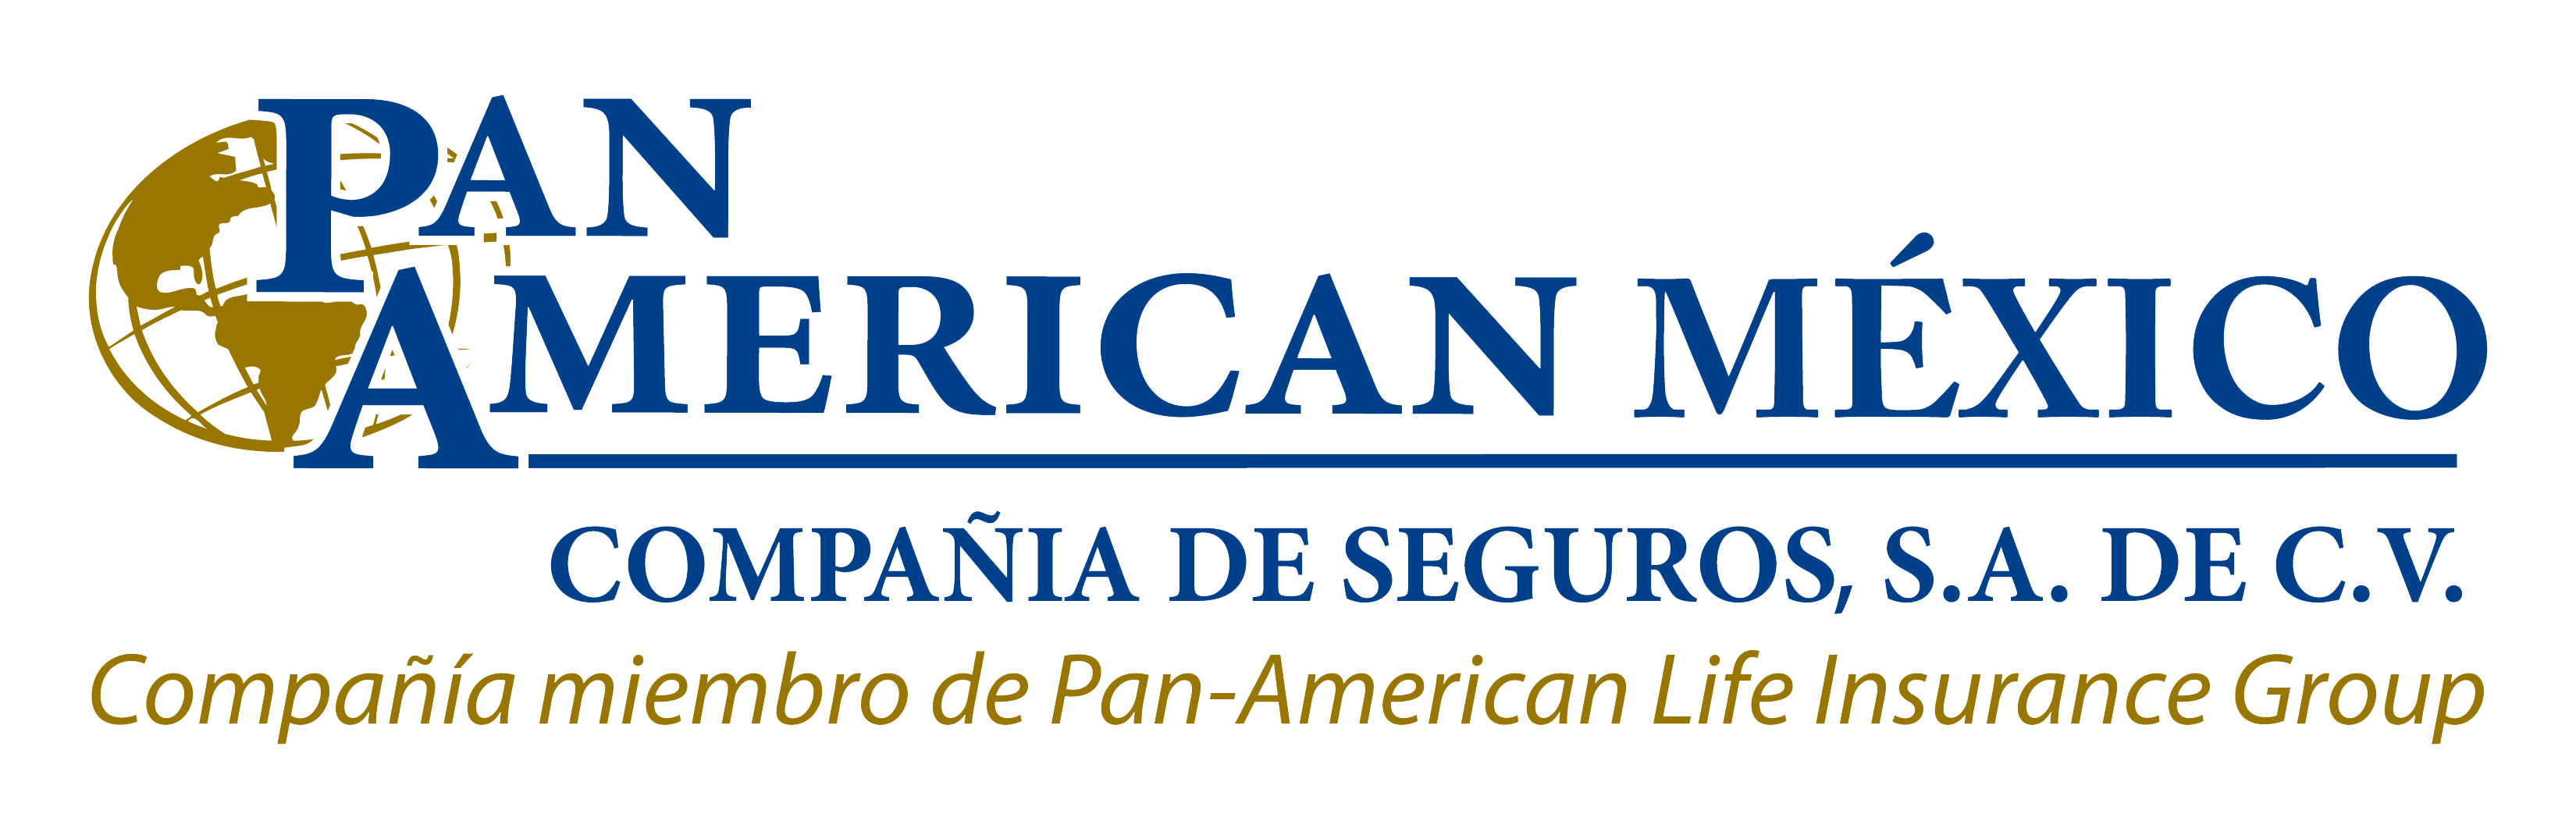 Panamerican